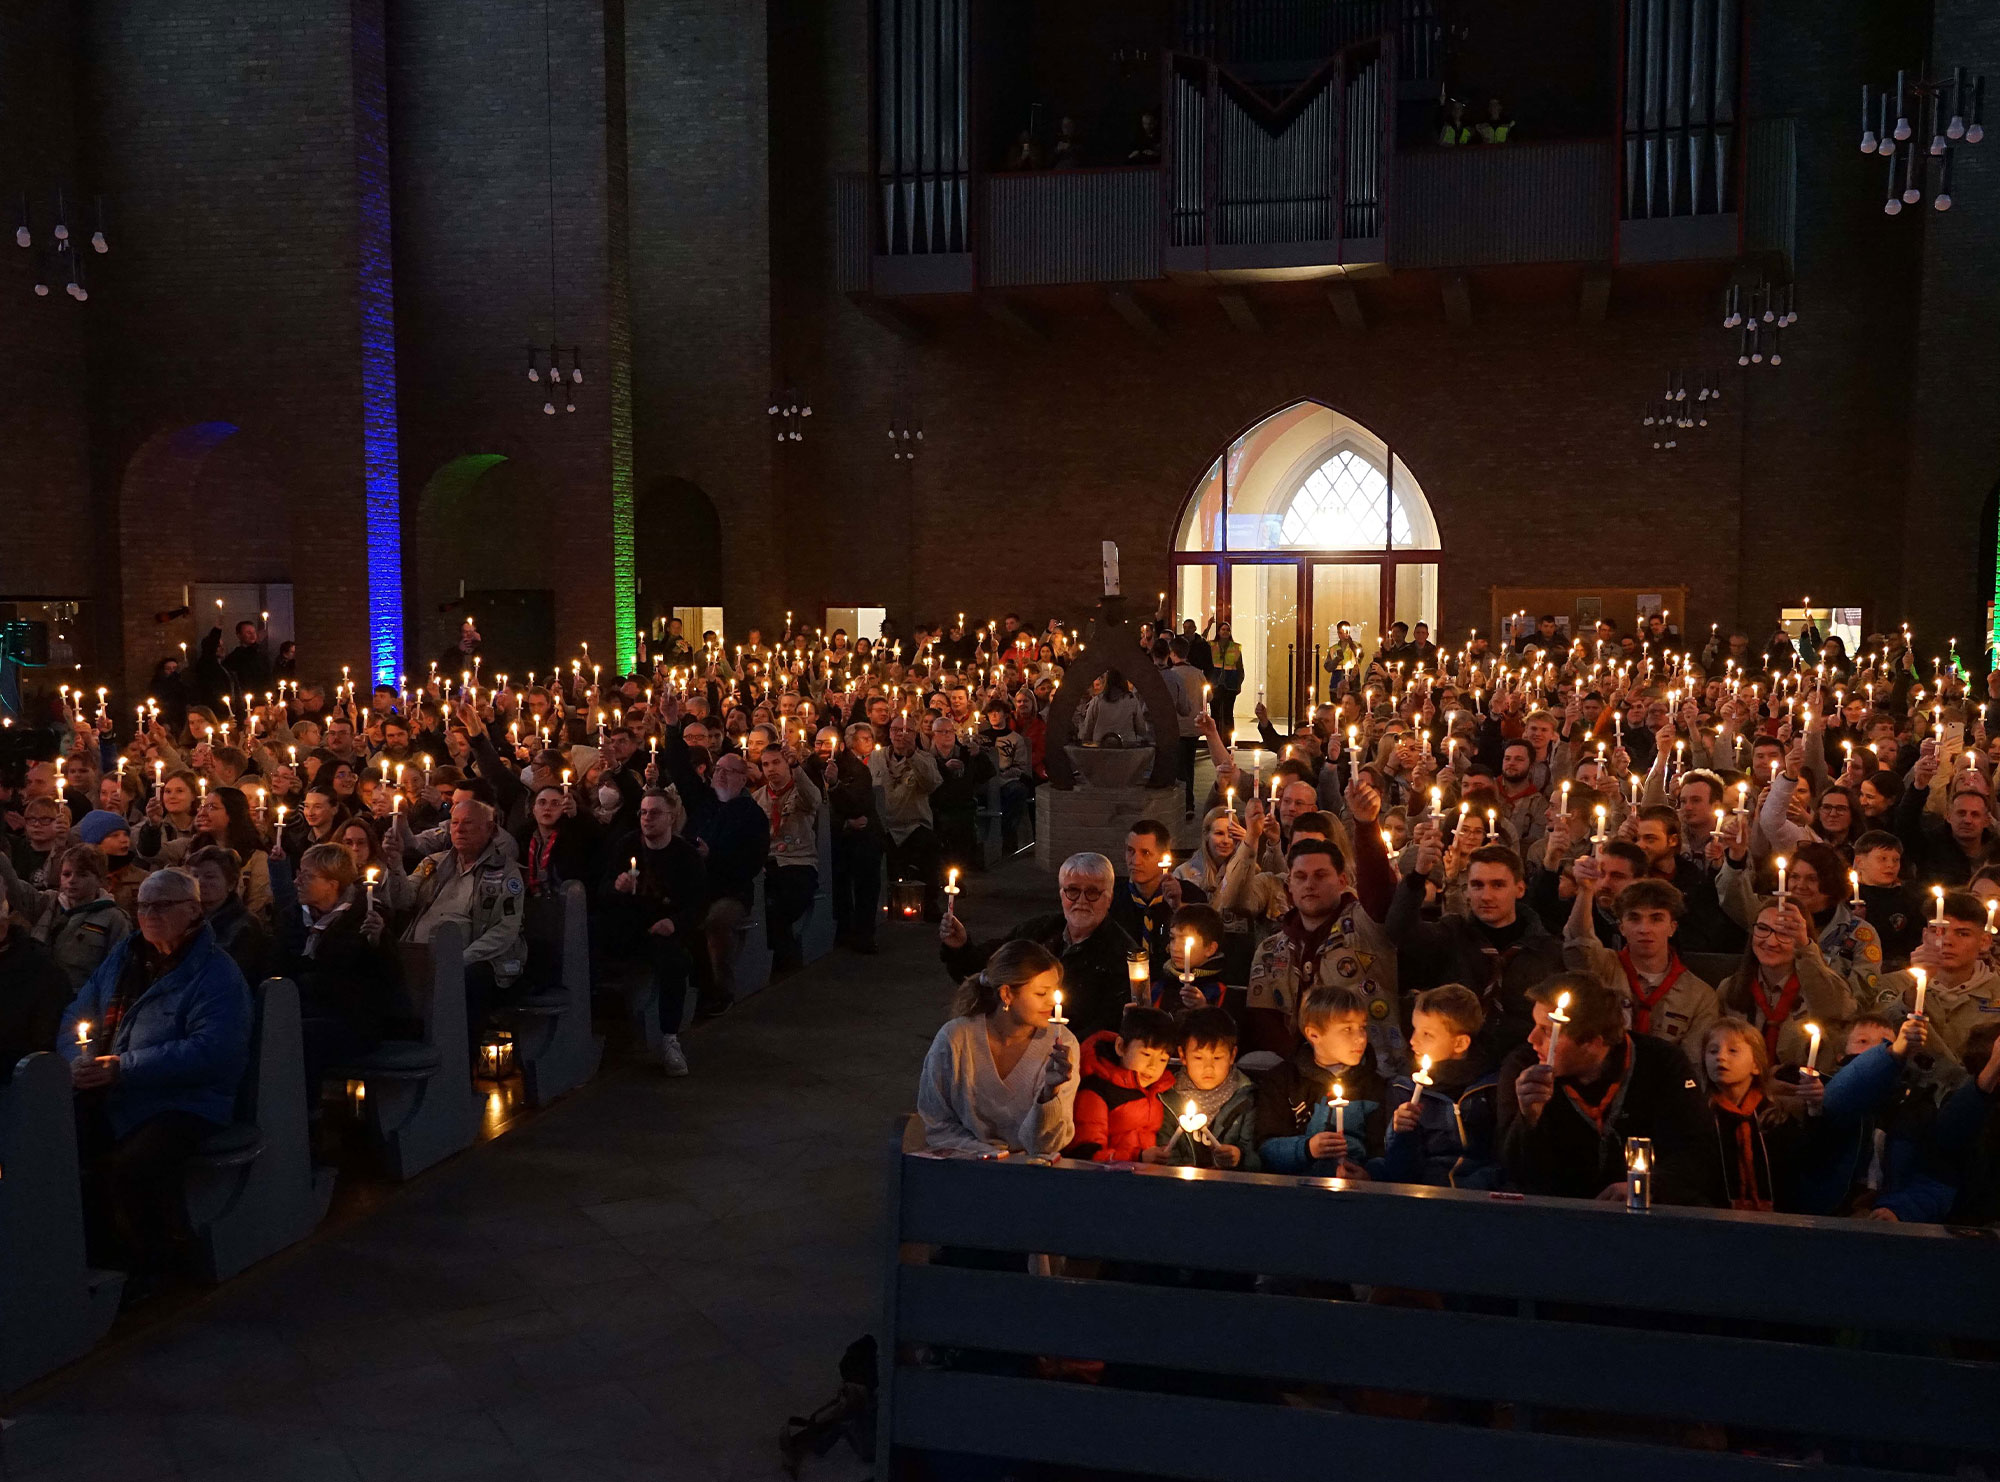 Hunderte kleiner Friedenslicht-Kerzen erhellten die St. Joseph-Kirche in Dortmund beim Aussendungsgottesdienst für das Friedenslicht aus Bethlehem. Foto: Michael Bodin / Erzbistum Paderborn